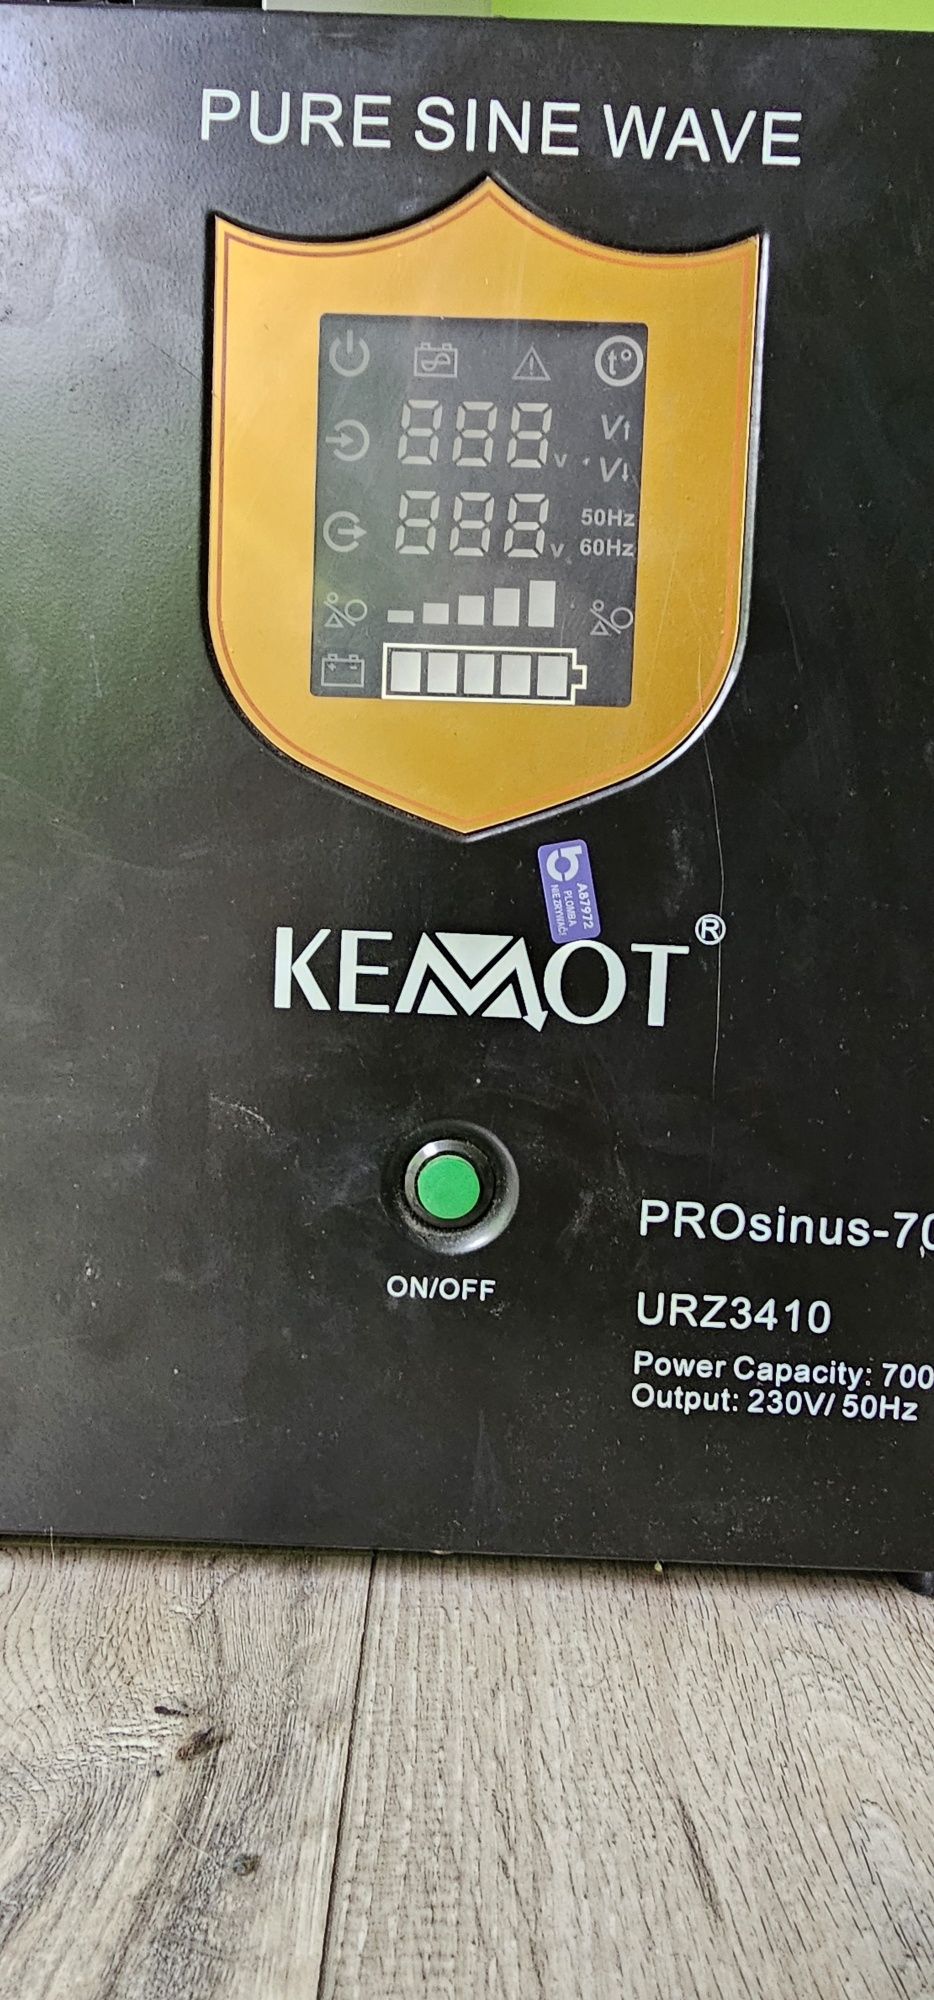 Kemot Prosinus-700 urz 3410